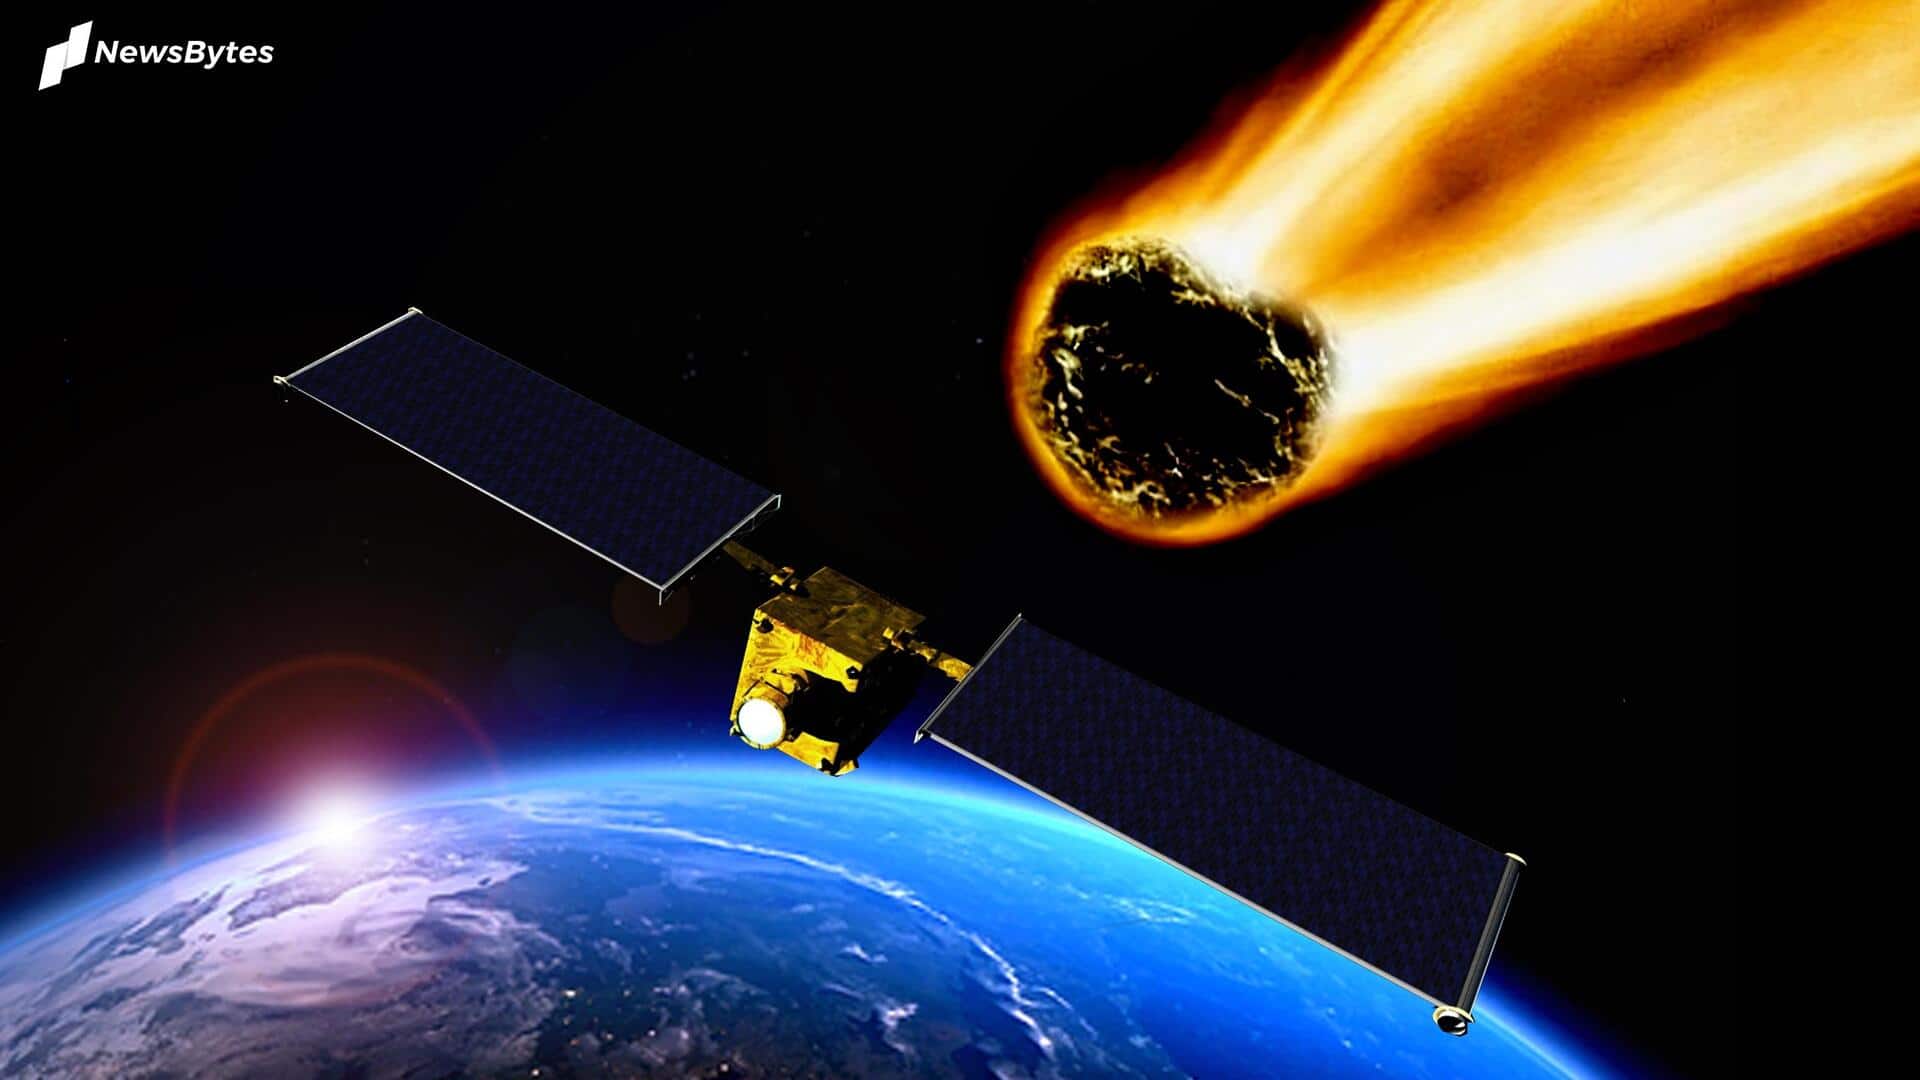 नासा ने जारी किया अलर्ट, पृथ्वी की तरफ बढ़ रहा 1,500 फीट चौड़ा एस्ट्रोयड 